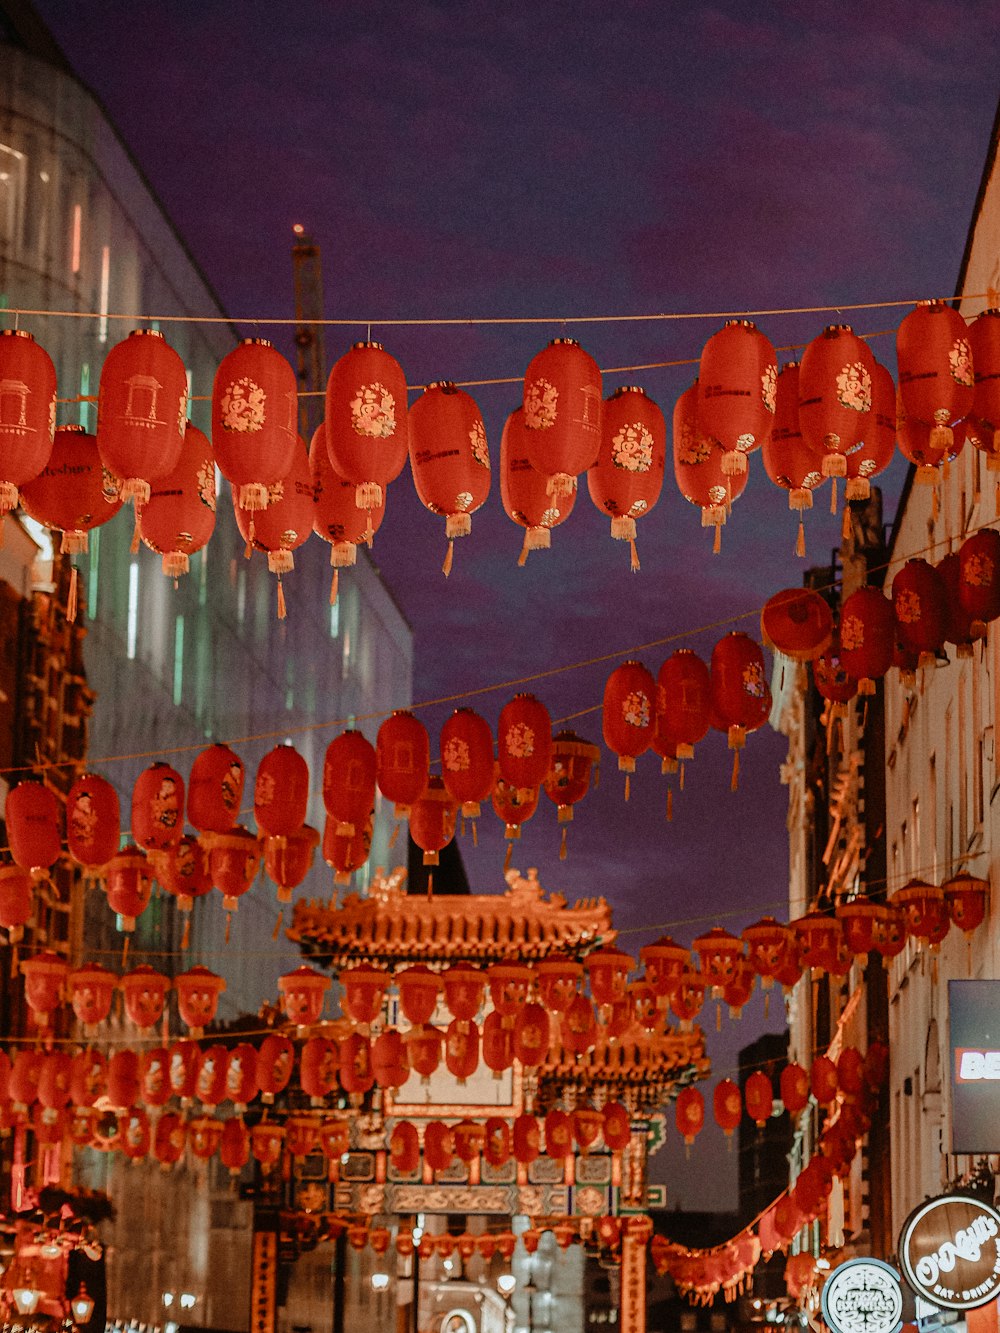 lanternes en papier rouge accrochées au plafond